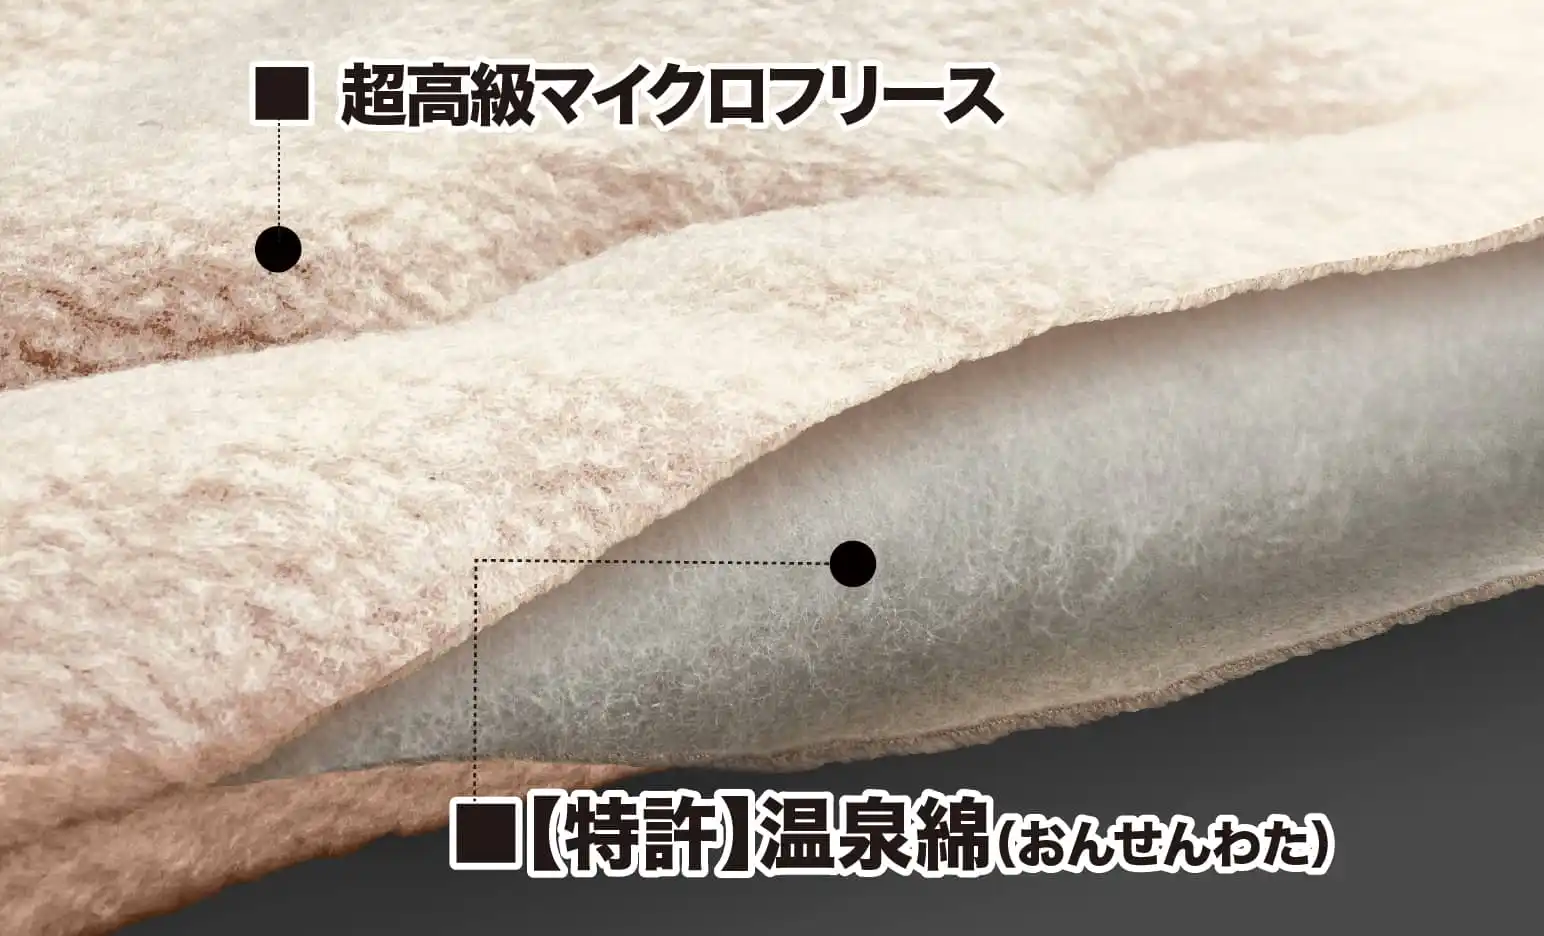 【特許】温泉綿の遠赤外線効果で、身体の内部から温まるケット「温泉ケット」